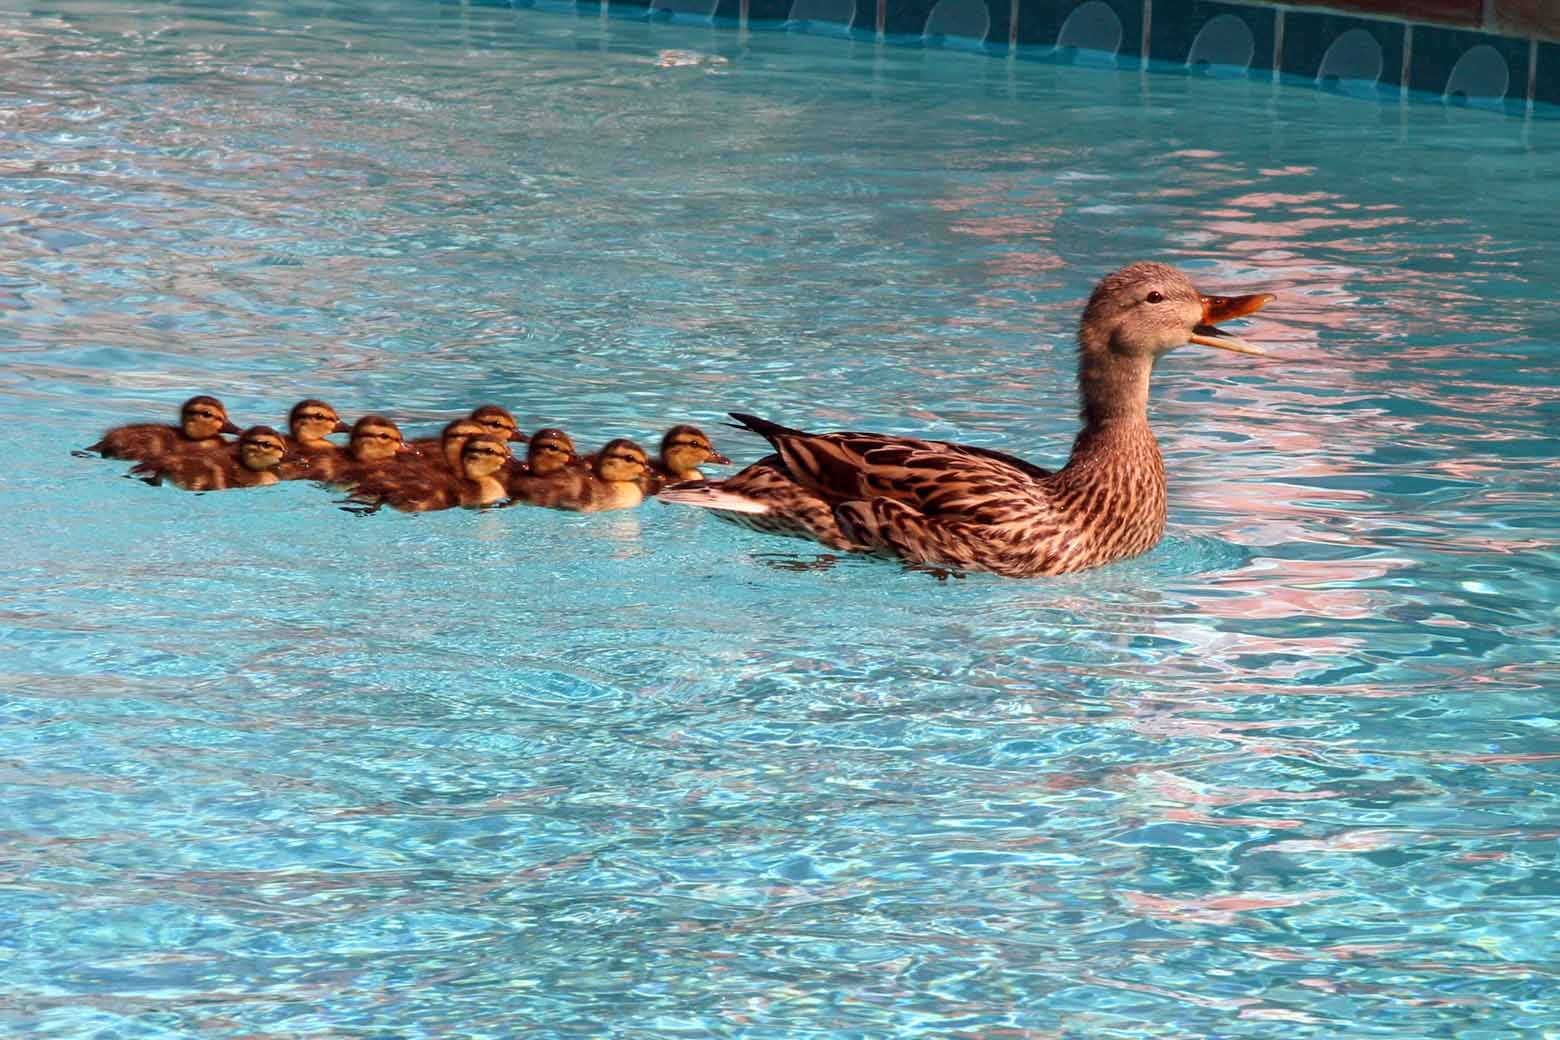 ducklings in swimming pool